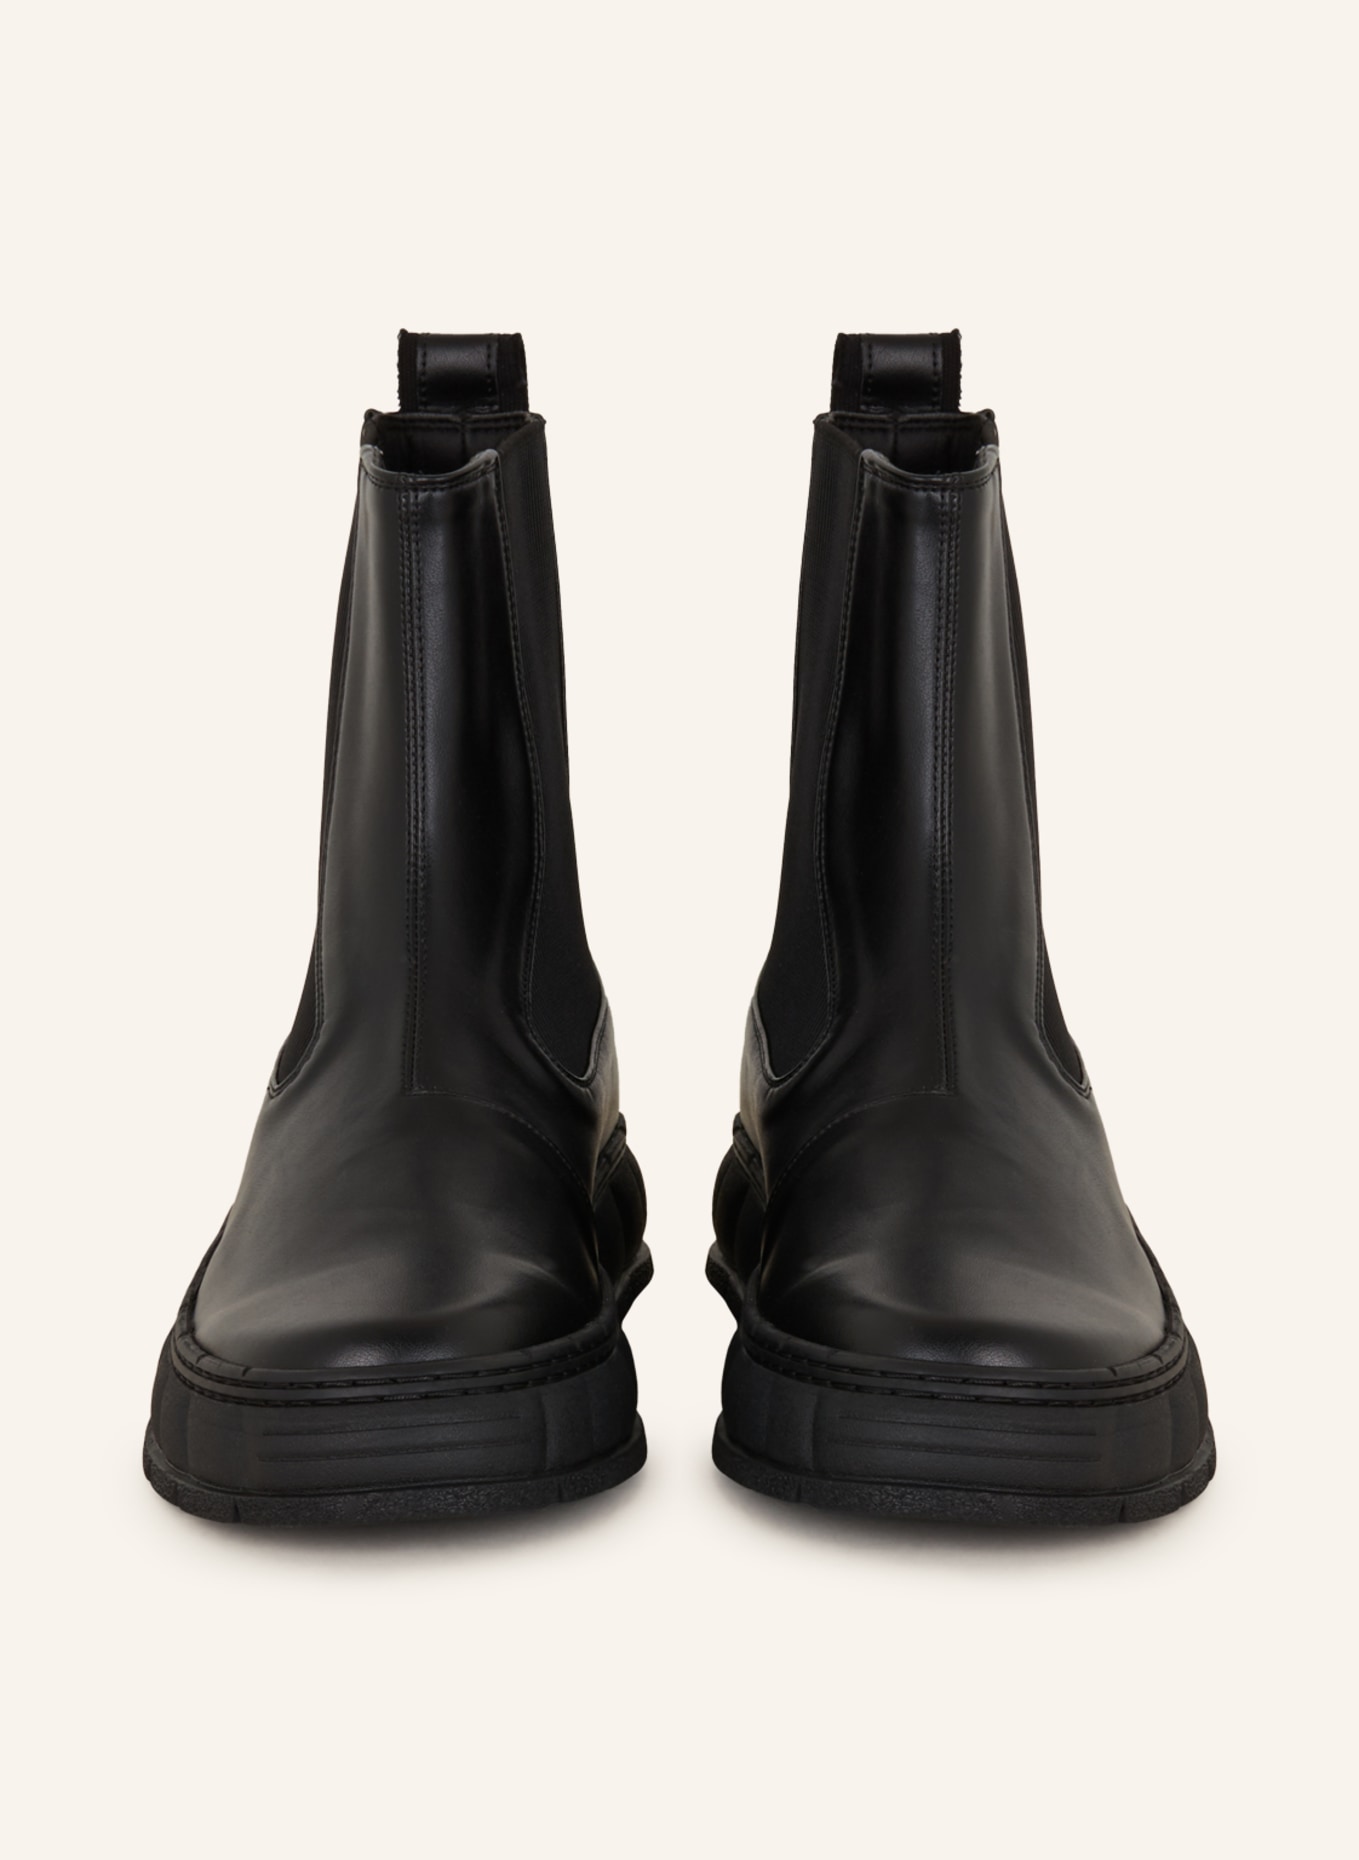 VIRÒN  boots 1997, Color: BLACK (Image 3)